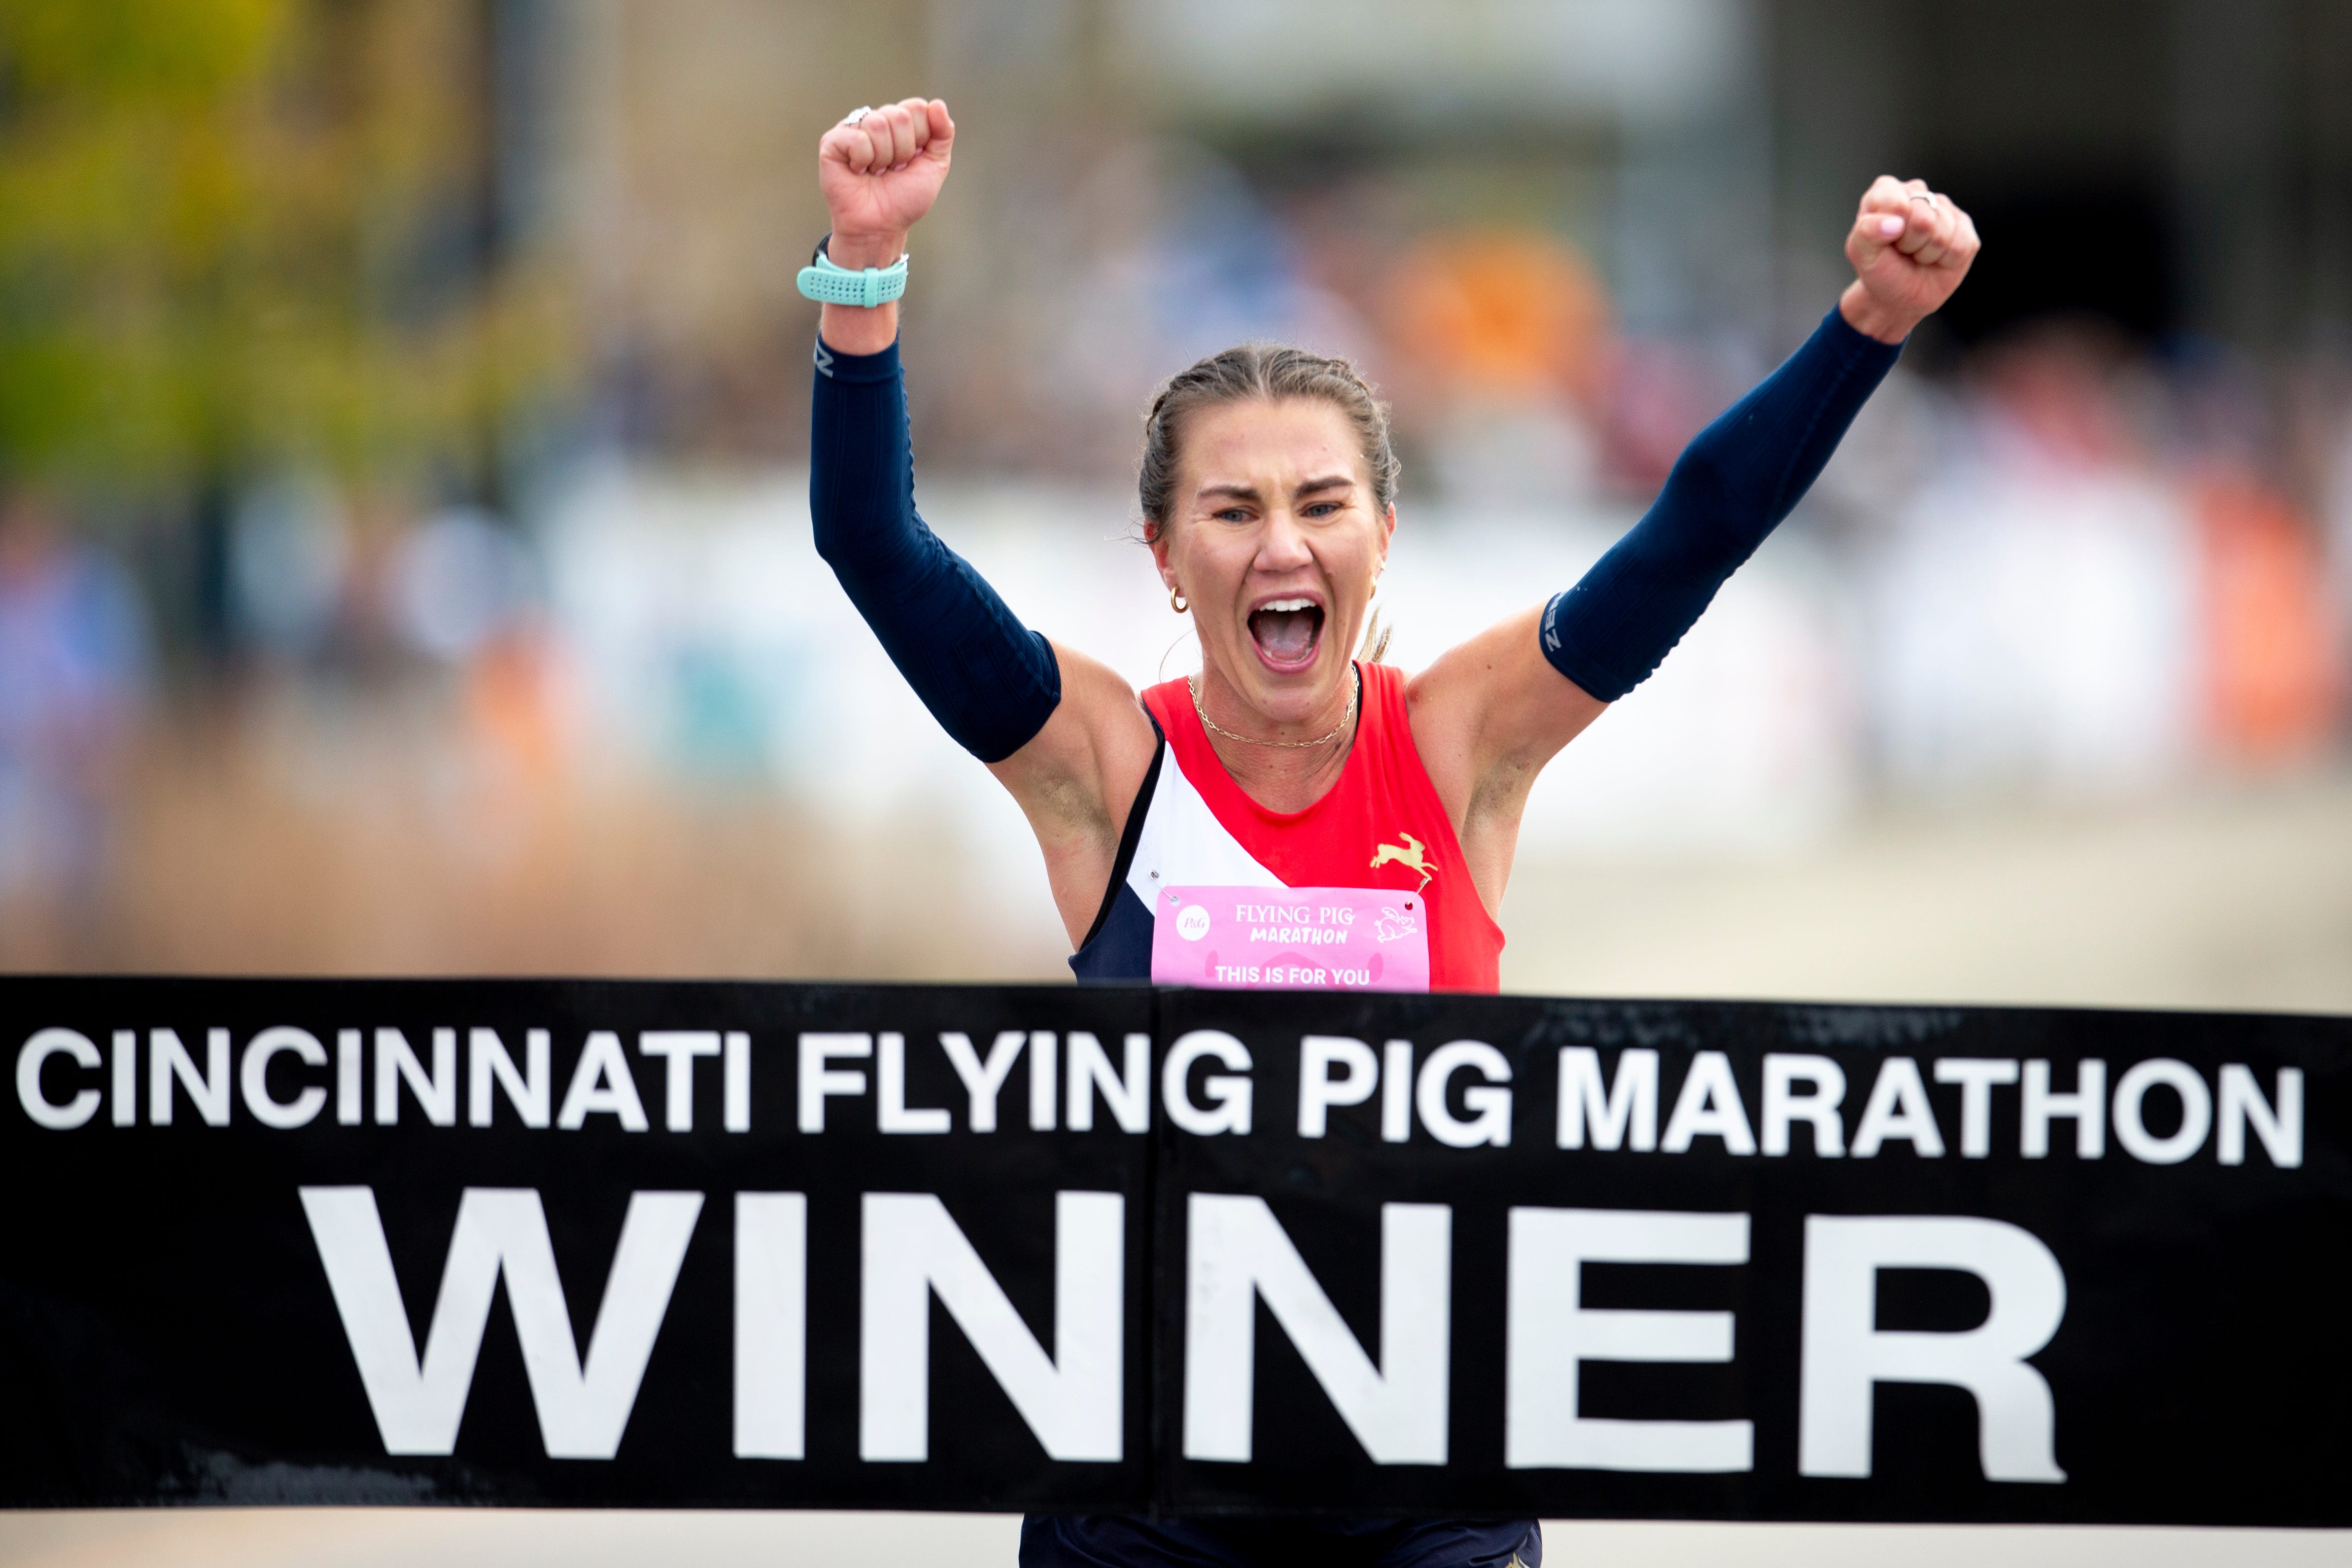 Flying Pig Marathon brings multiple street closures across Cincinnati